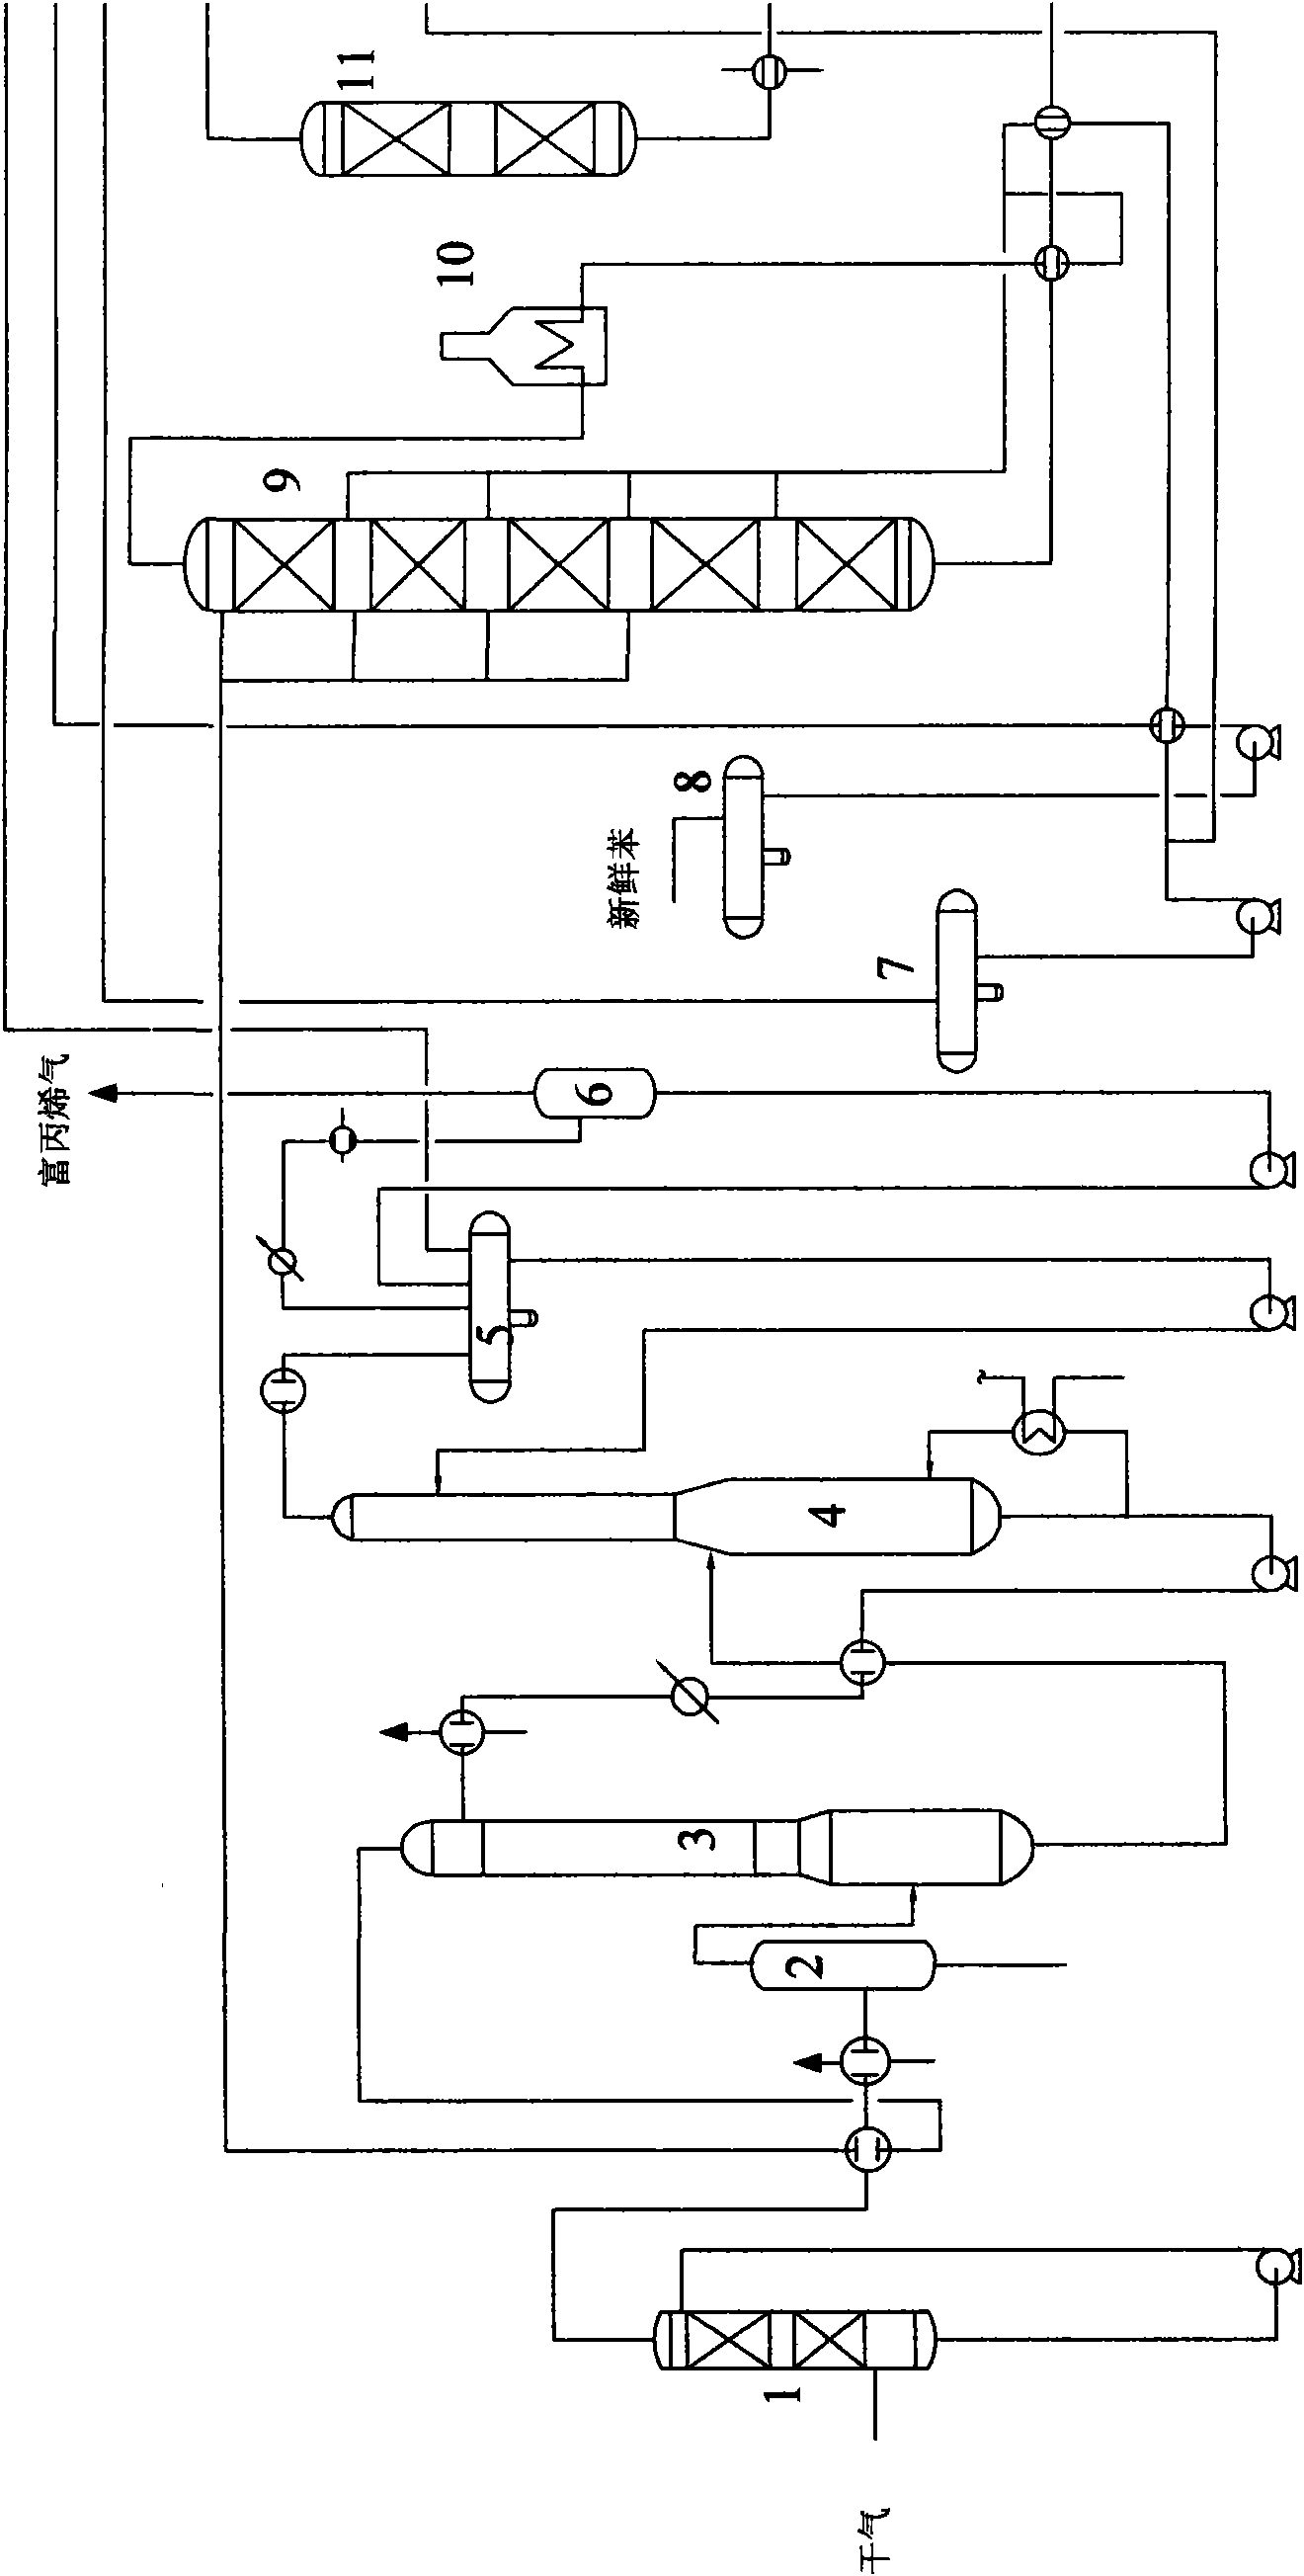 Method for preparing ethylbenzene by reaction of dilute ethylene and benzene